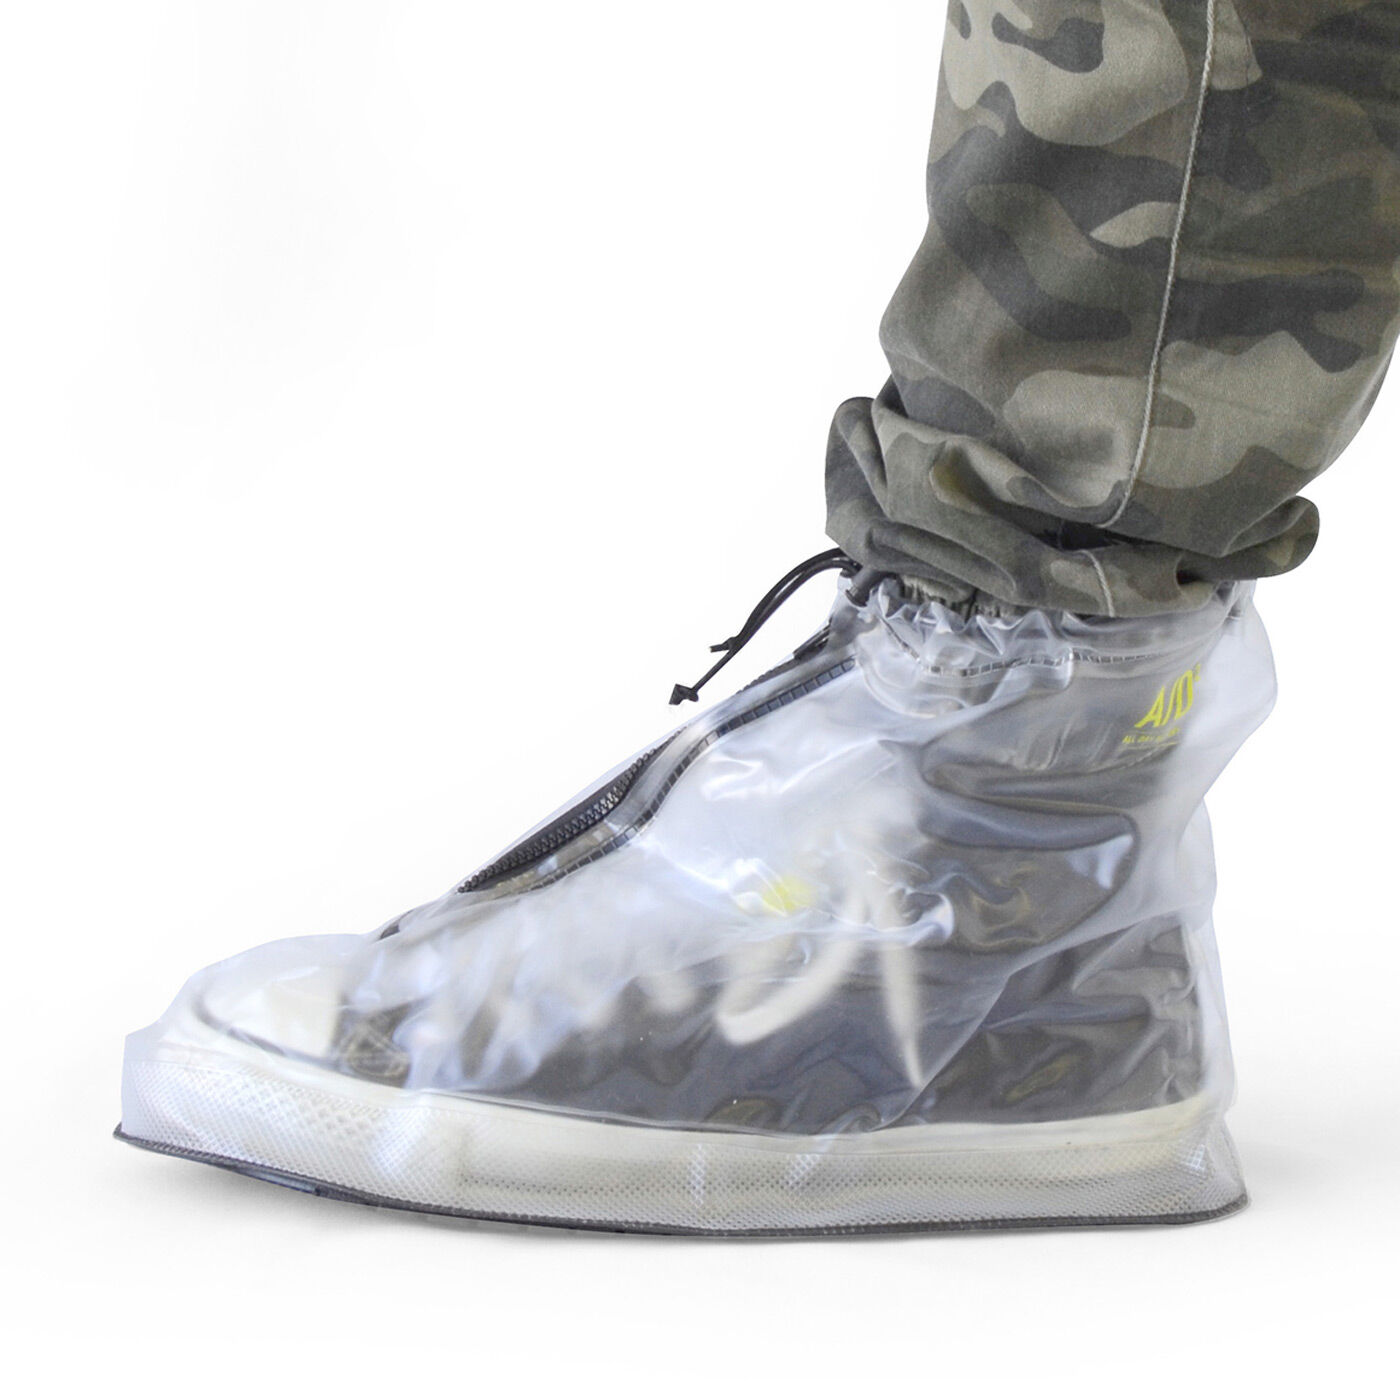 フェリシモの雑貨Kraso|靴を雨や泥から守る　たたんで持ち歩けるシューズレインカバー〈透明〉|パンツのすそも入れられます。